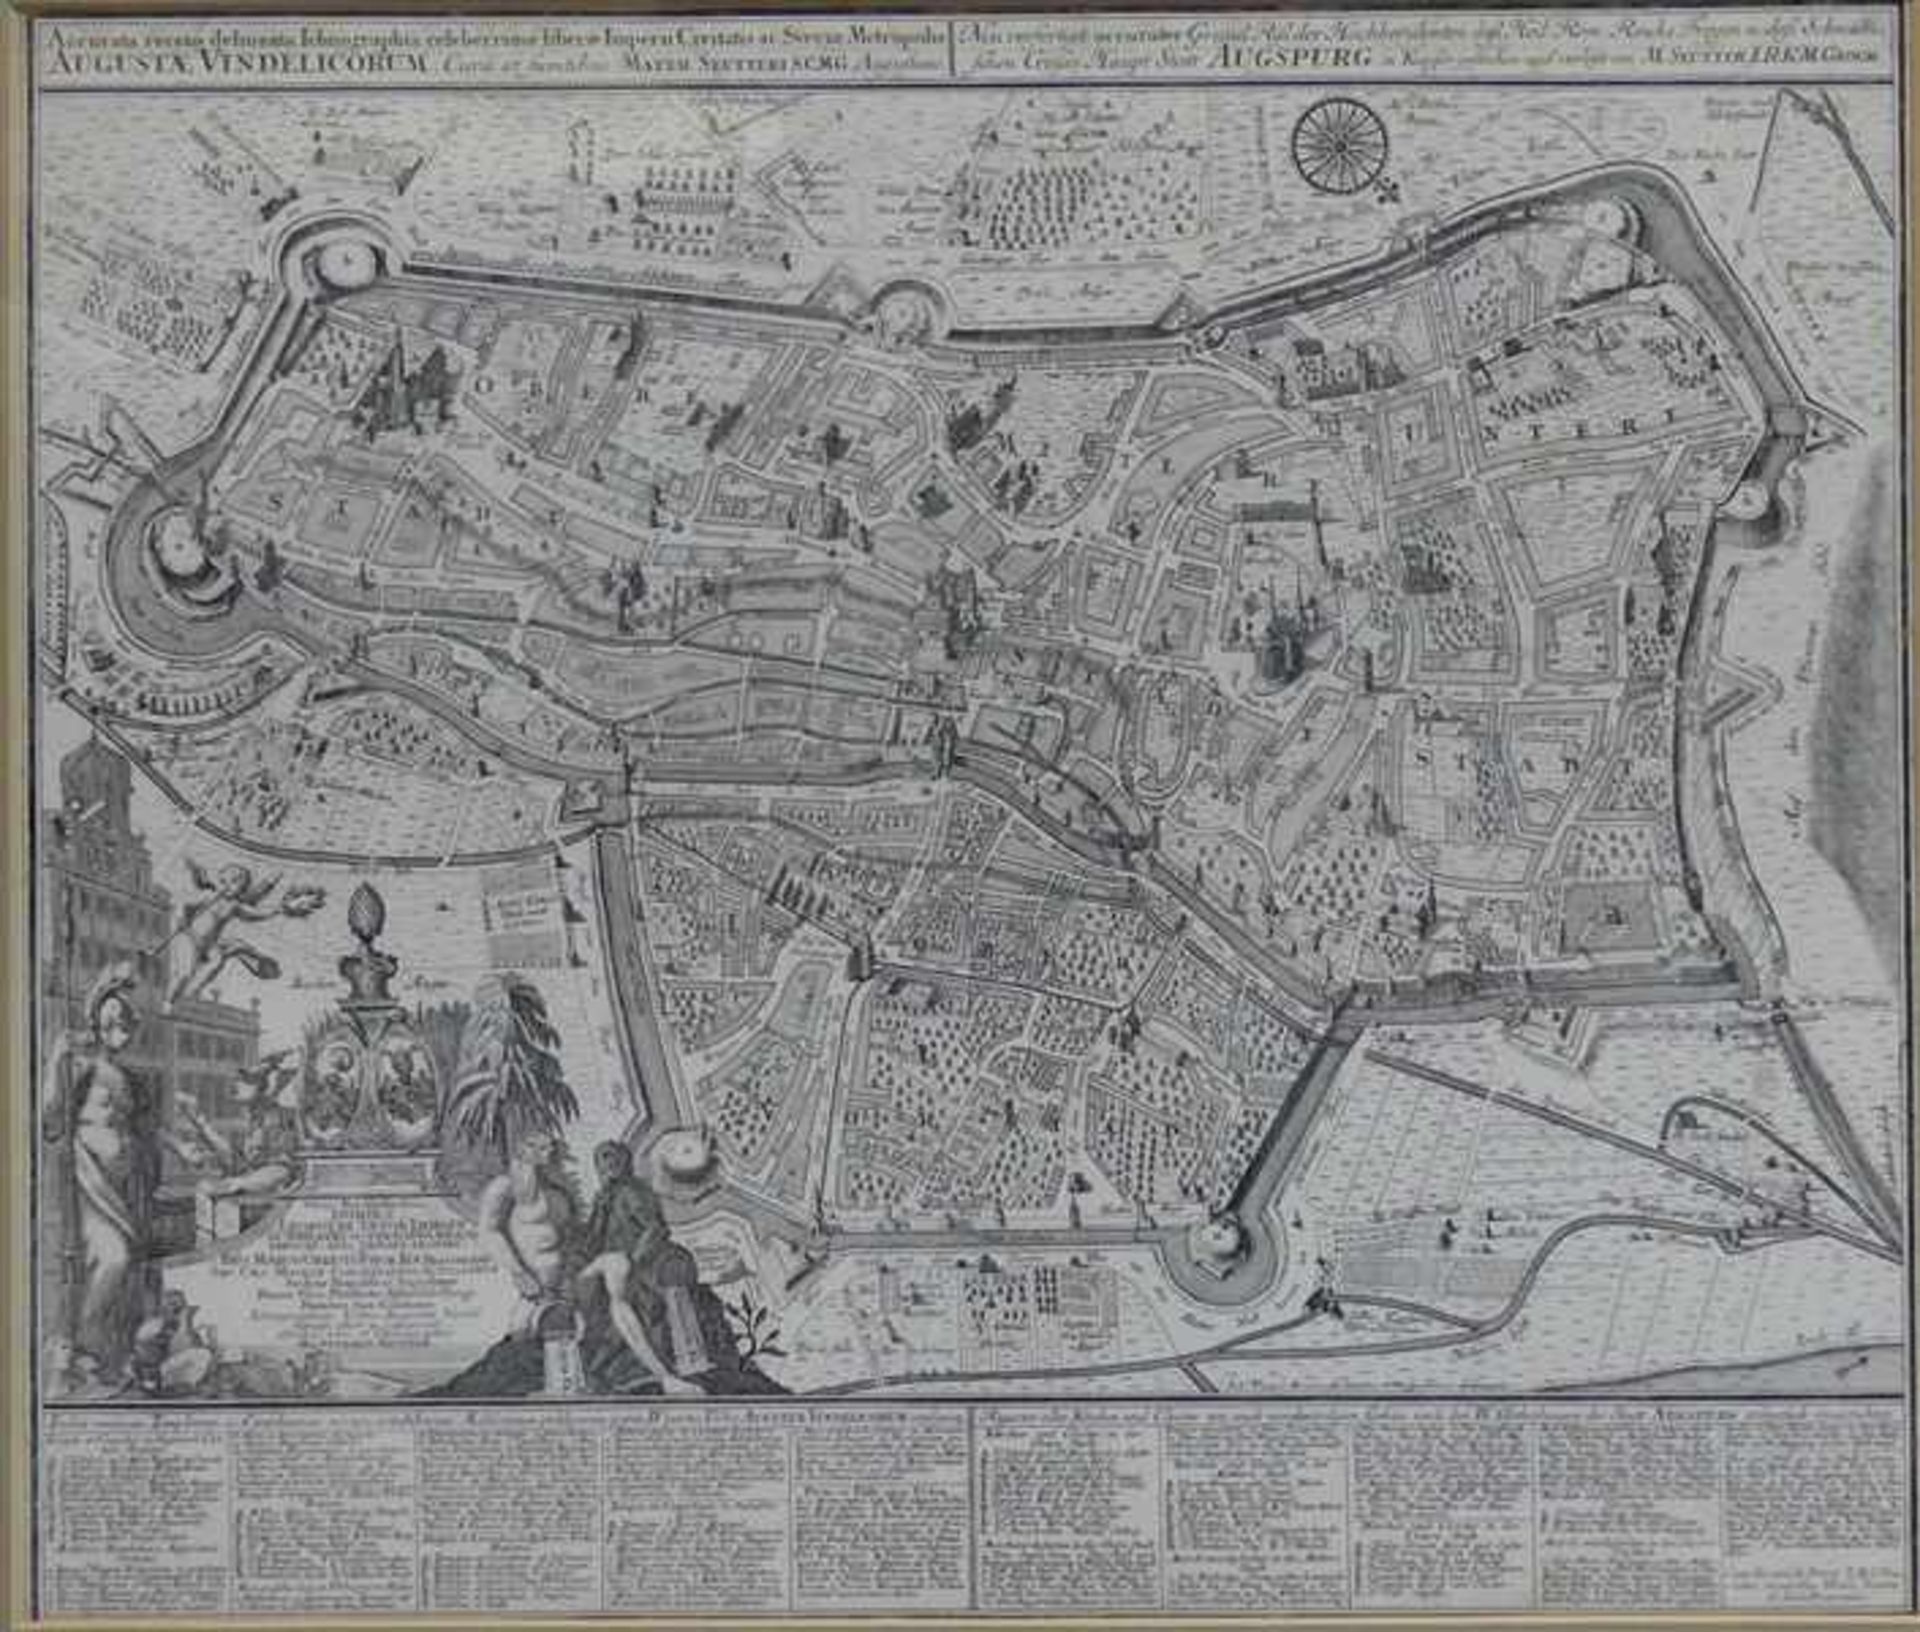 Kupferstichgroßformatiger Plan der "Stadt Augspurg" von Matthias Seutter, mit Legende und